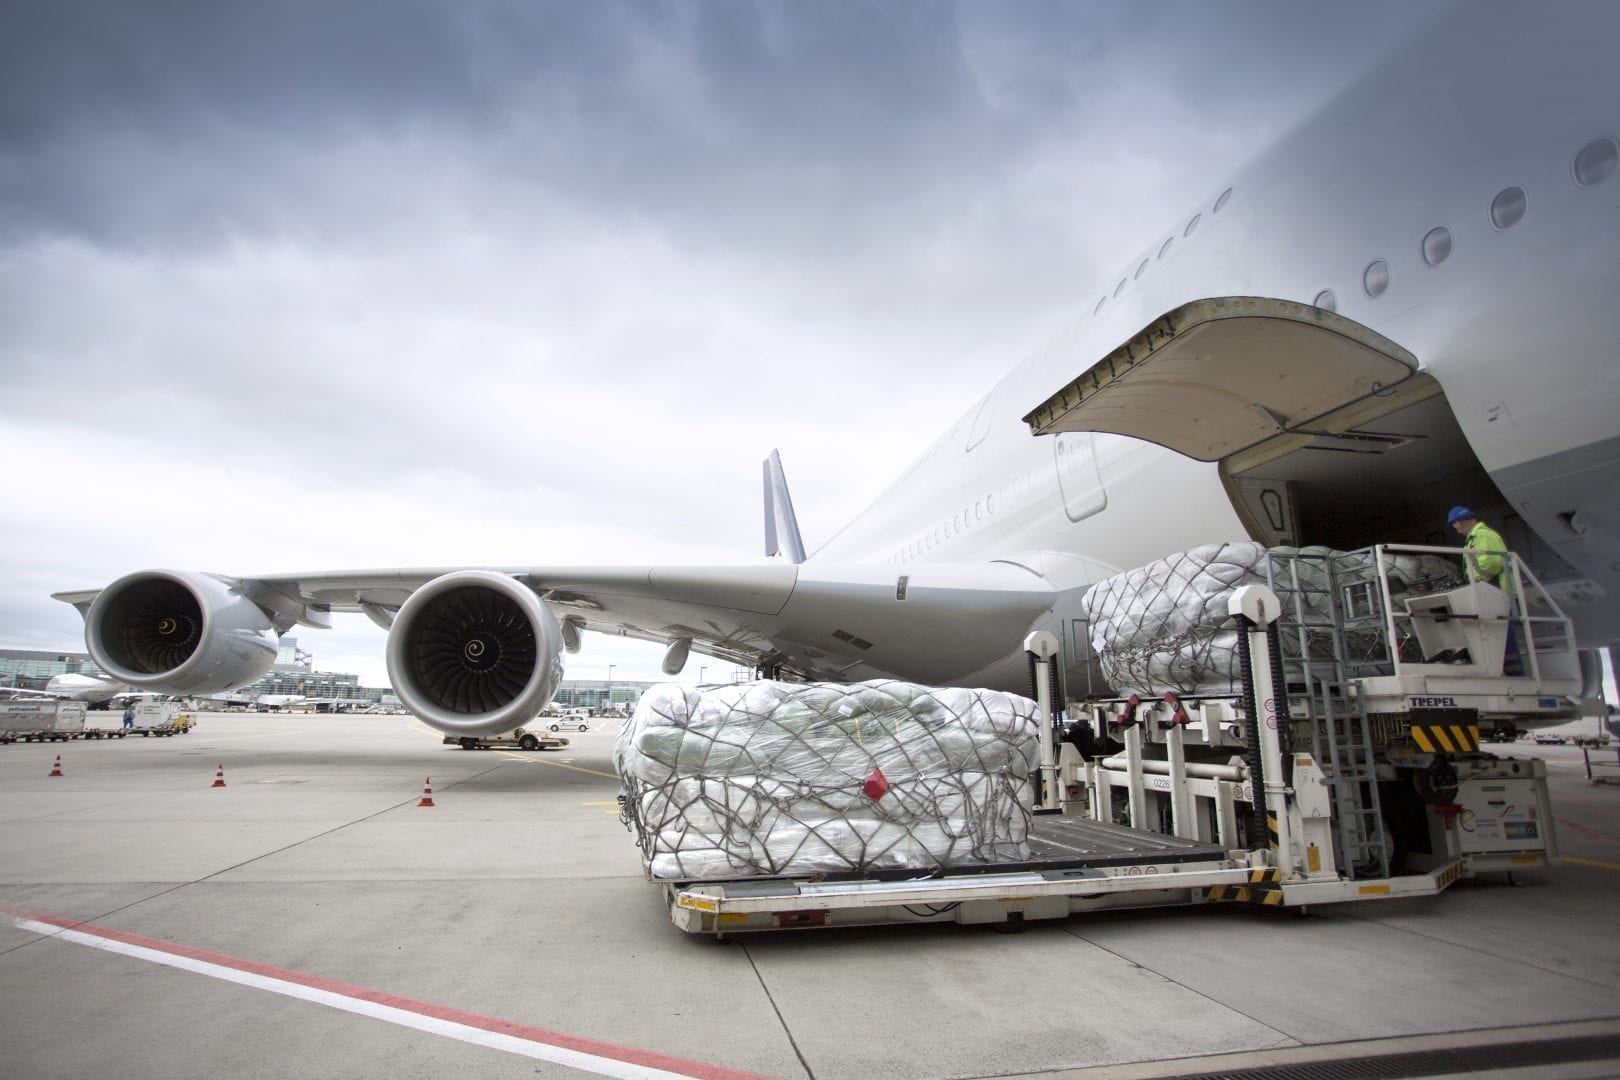 Air freight là gì? Tìm hiểu một số thông tin phổ biến về Air freight